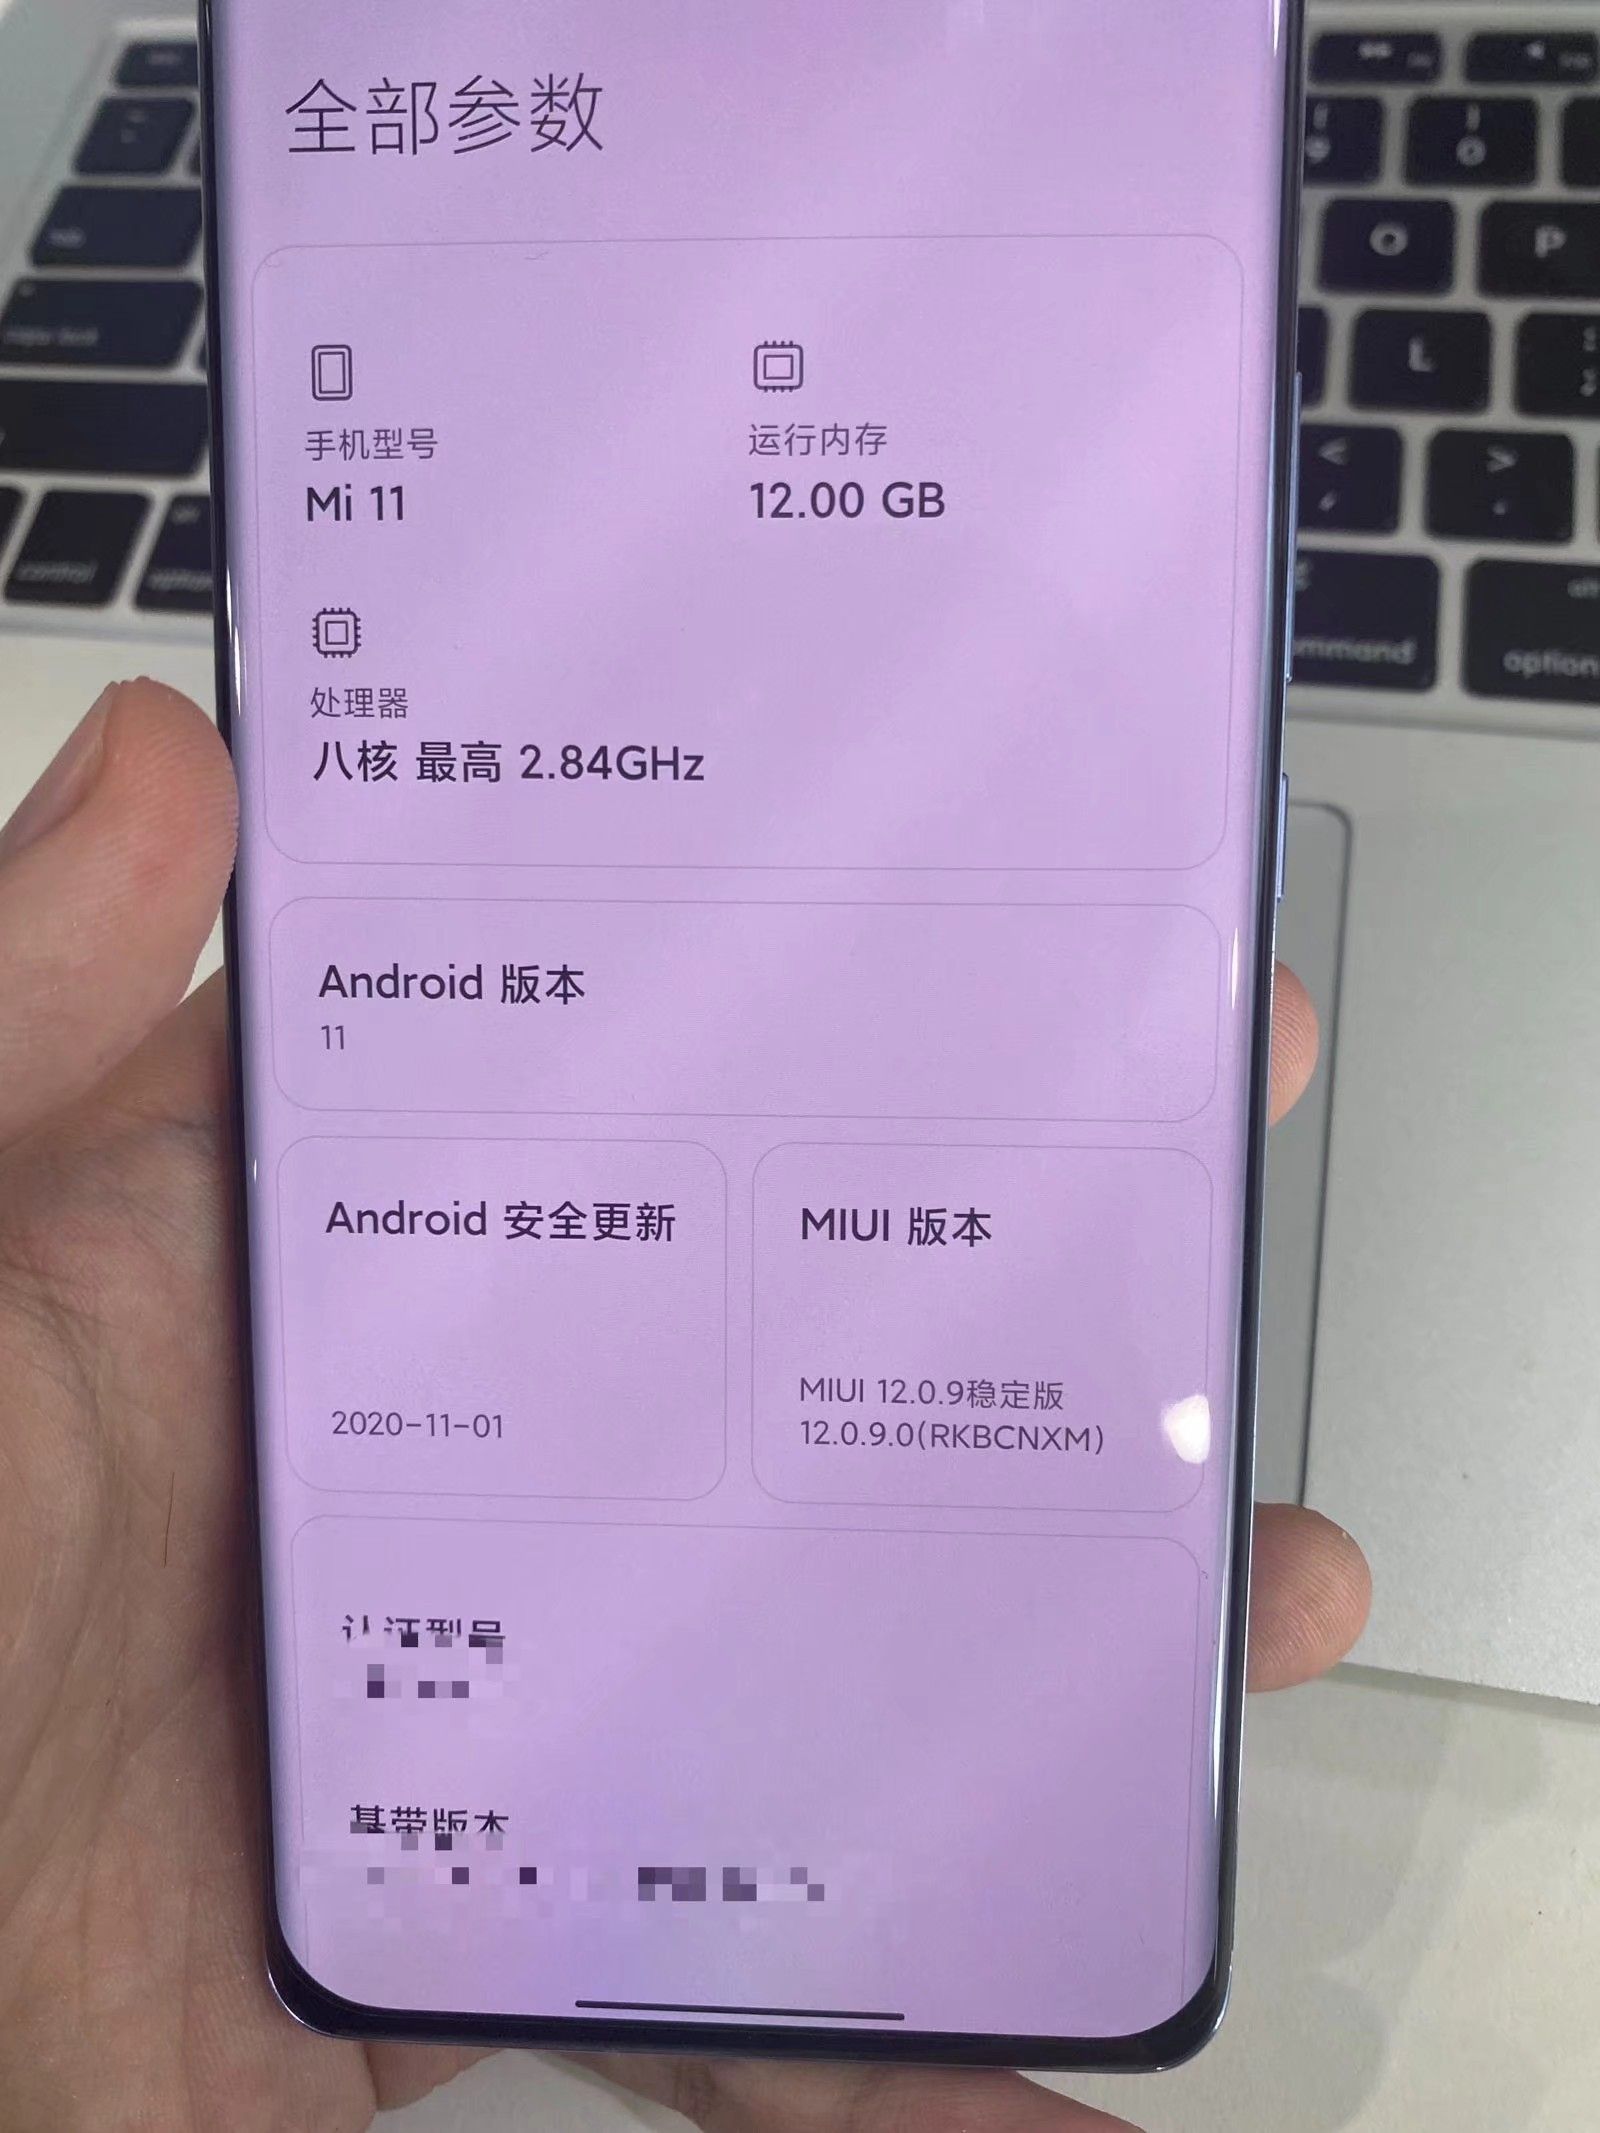  Xiaomi Mi 11: Версия из кожи показалась на живых фото Xiaomi  - roskoshnaa_versia_xiaomi_mi_11_iz_kozhi_pokazalas_na_zhivyh_foto_picture2_1